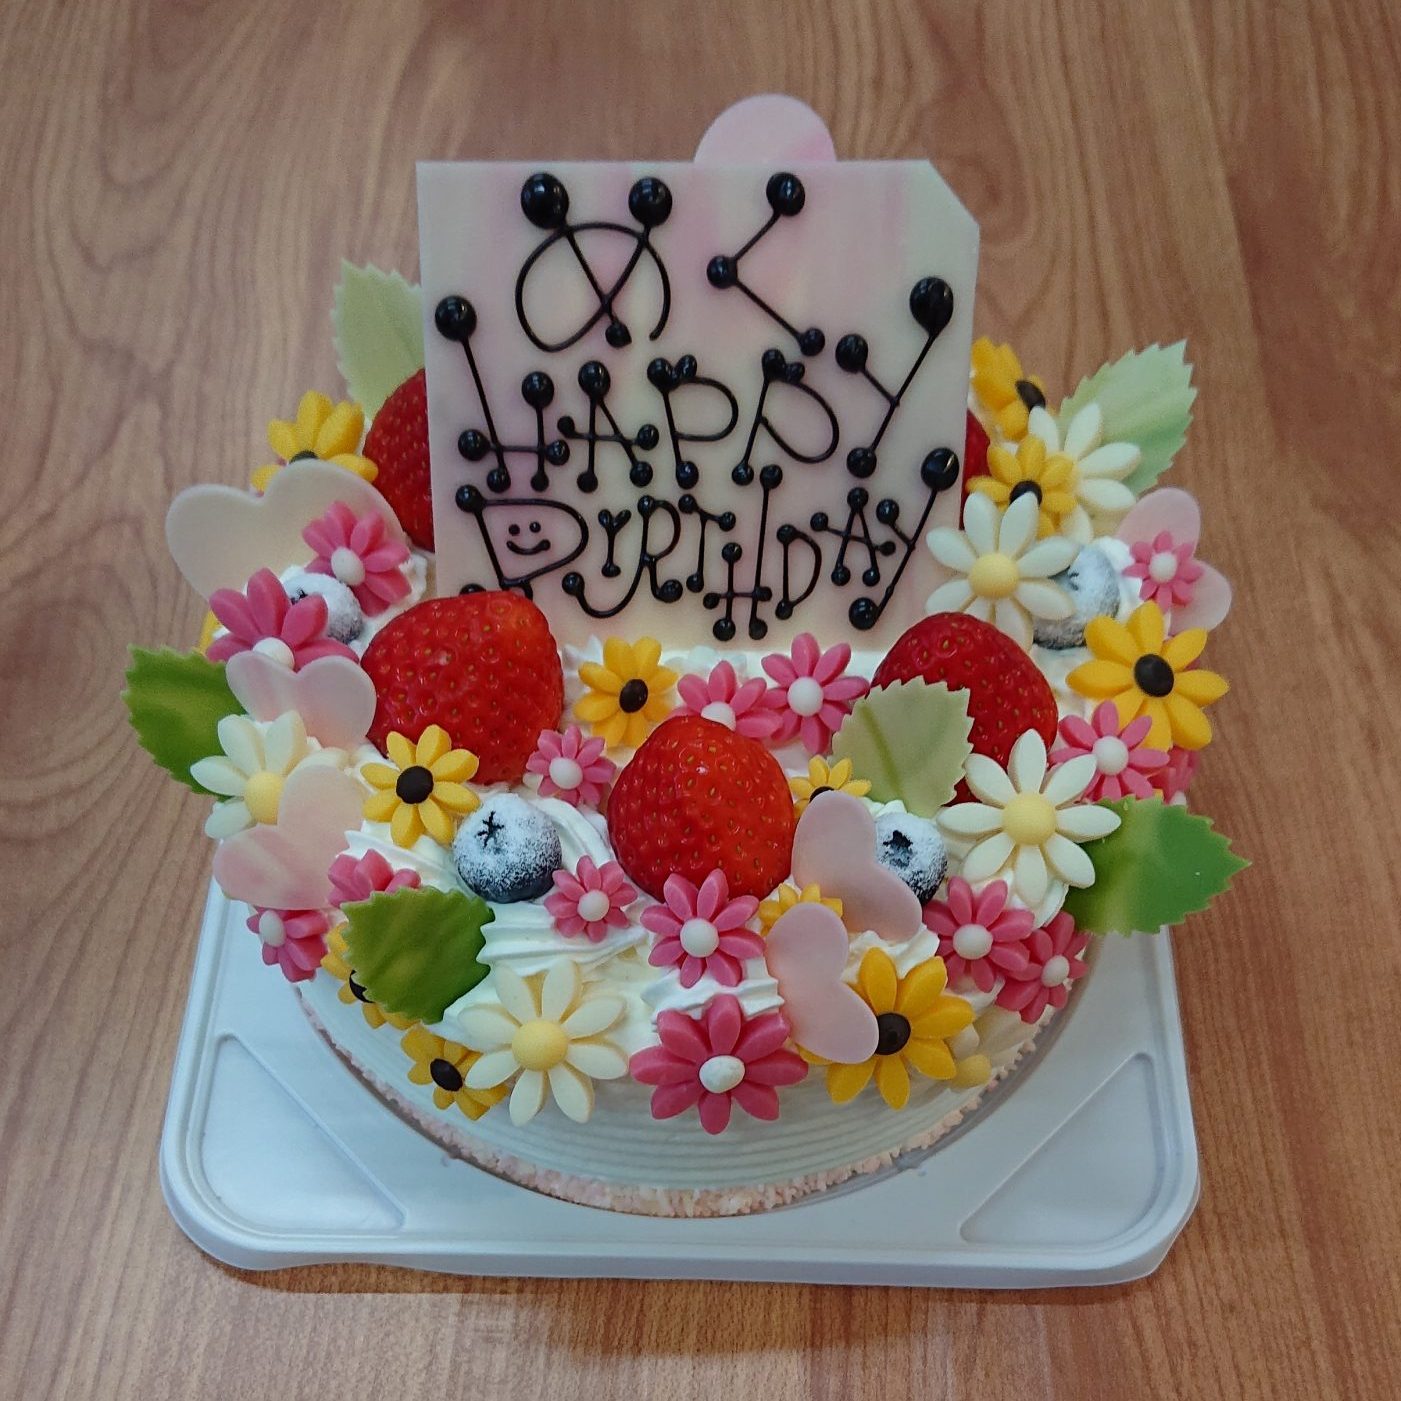 お花畑のデコレーションケーキ 沖縄の洋菓子 ケーキ屋 ココソラおかし店